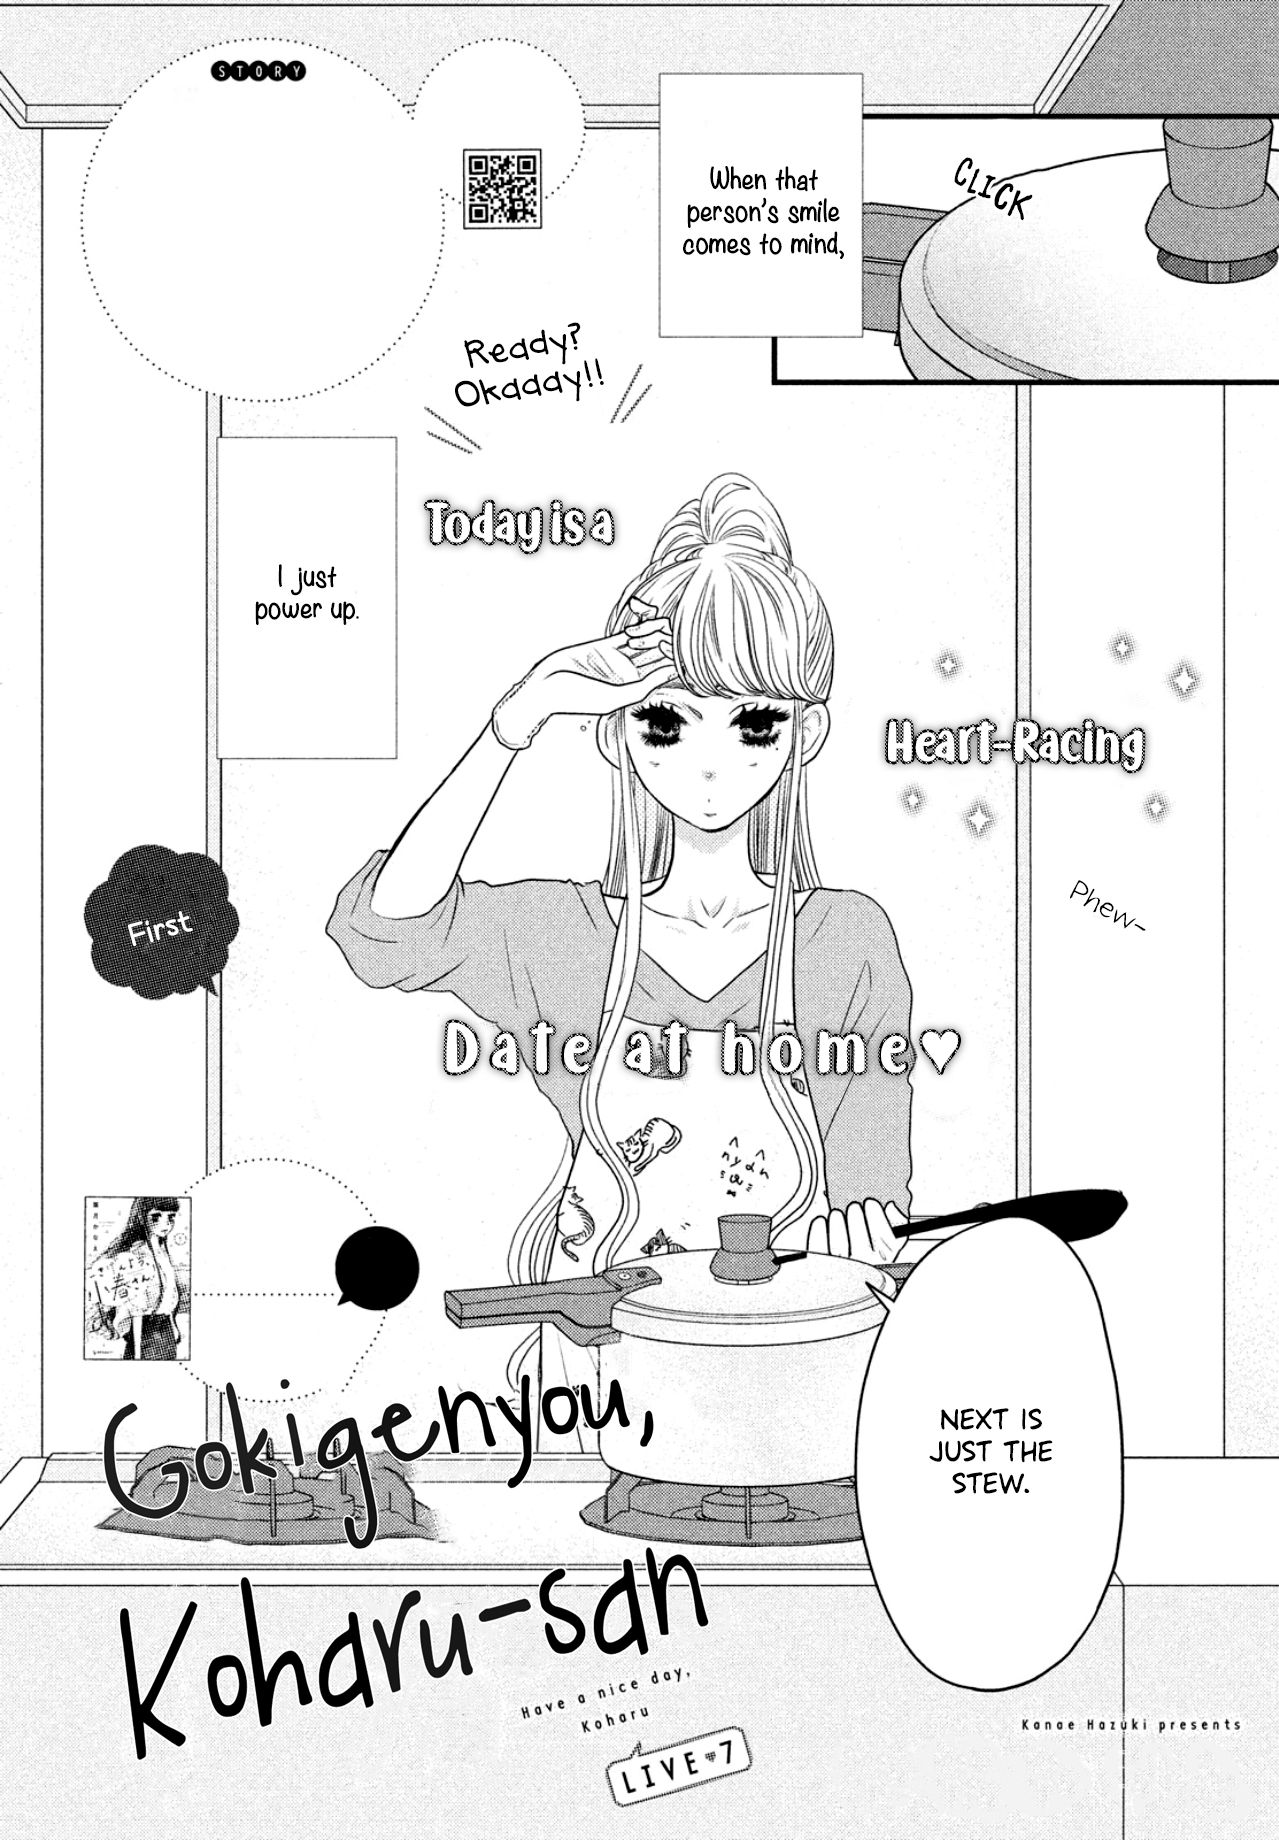 Gokigenyou, Koharu-san - chapter 7 - #4